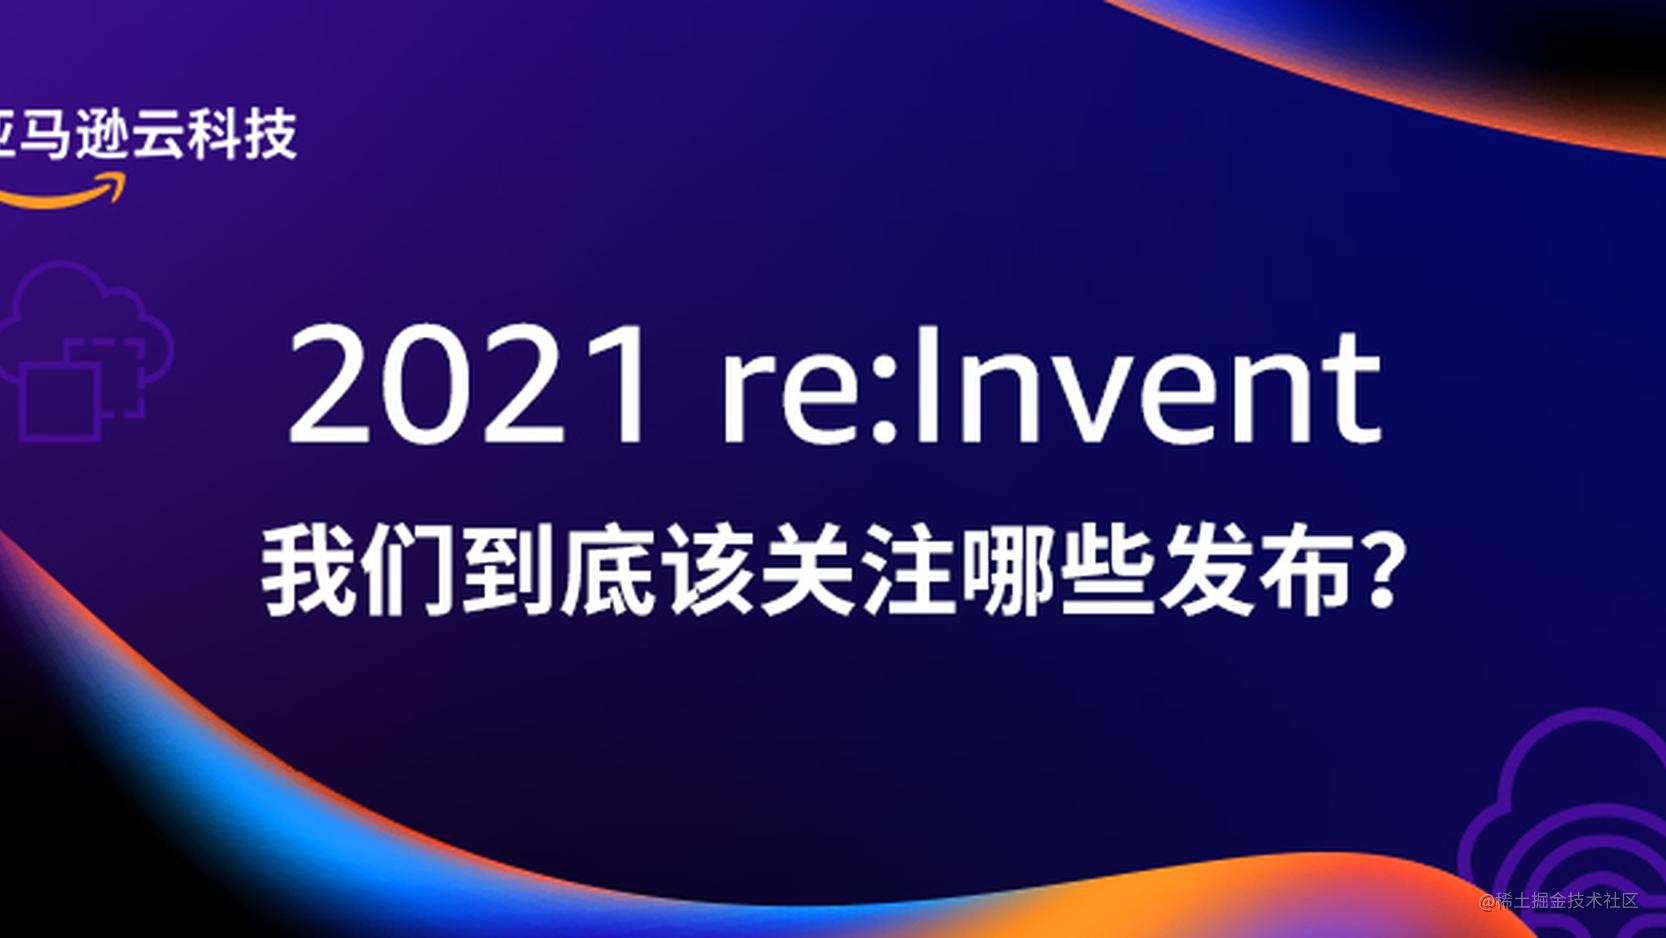 2021 re:Invent，我们到底该关注哪些发布？